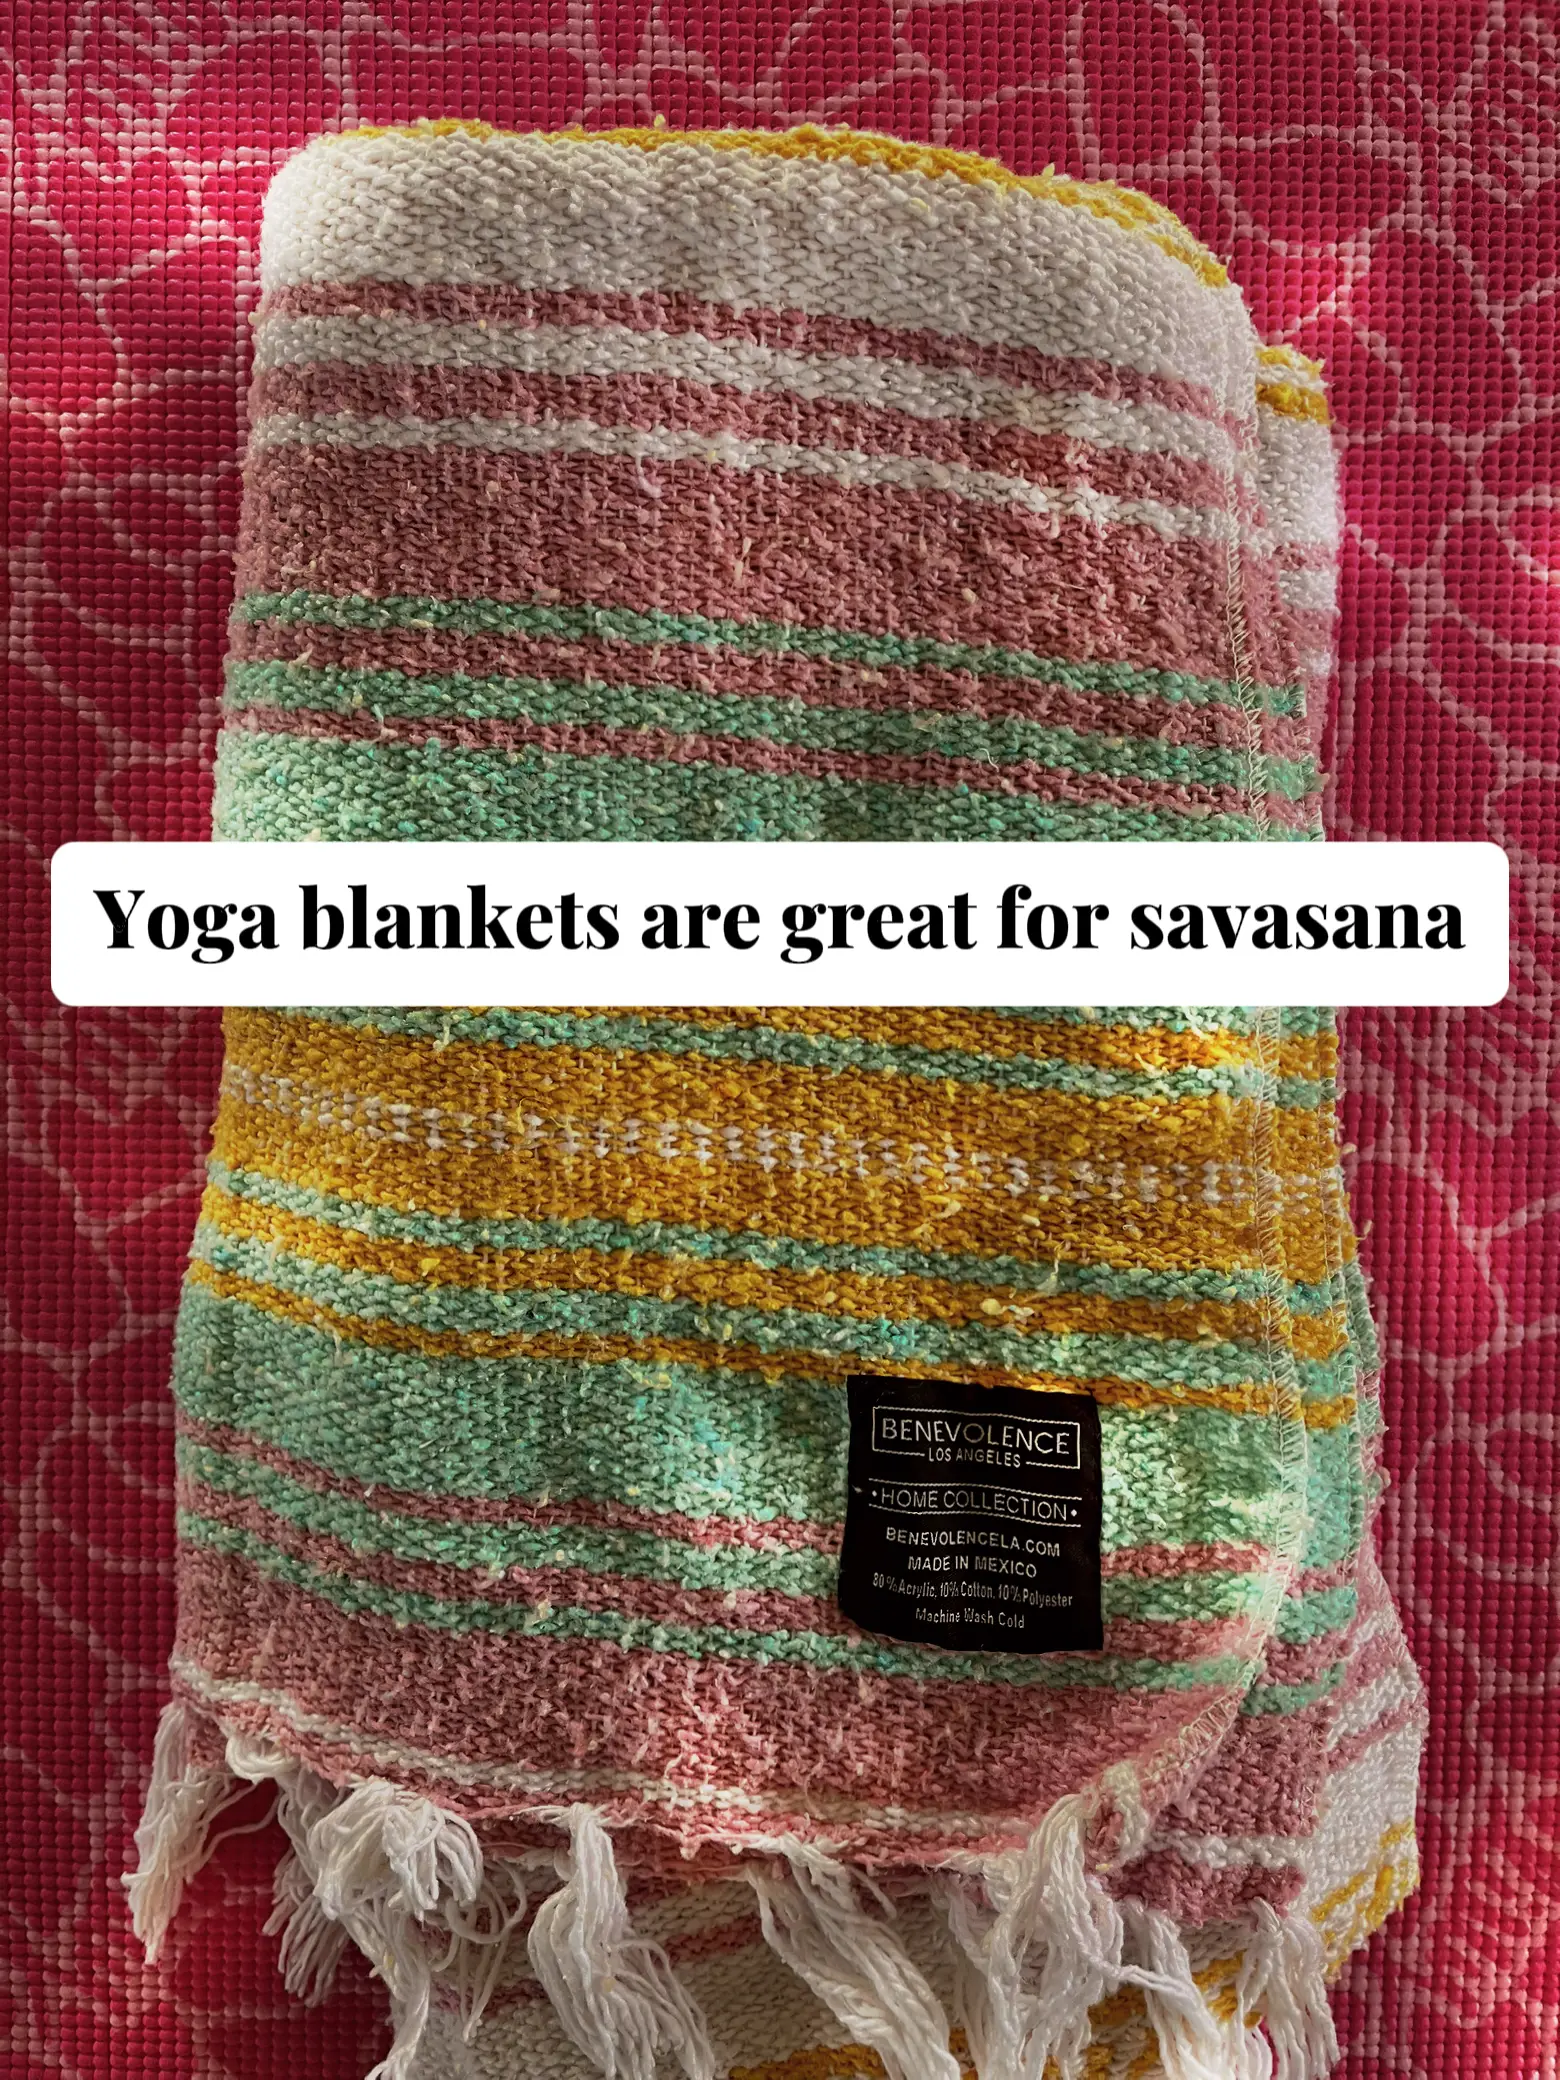 Namaste Knit Yoga Socks - I Like Knitting